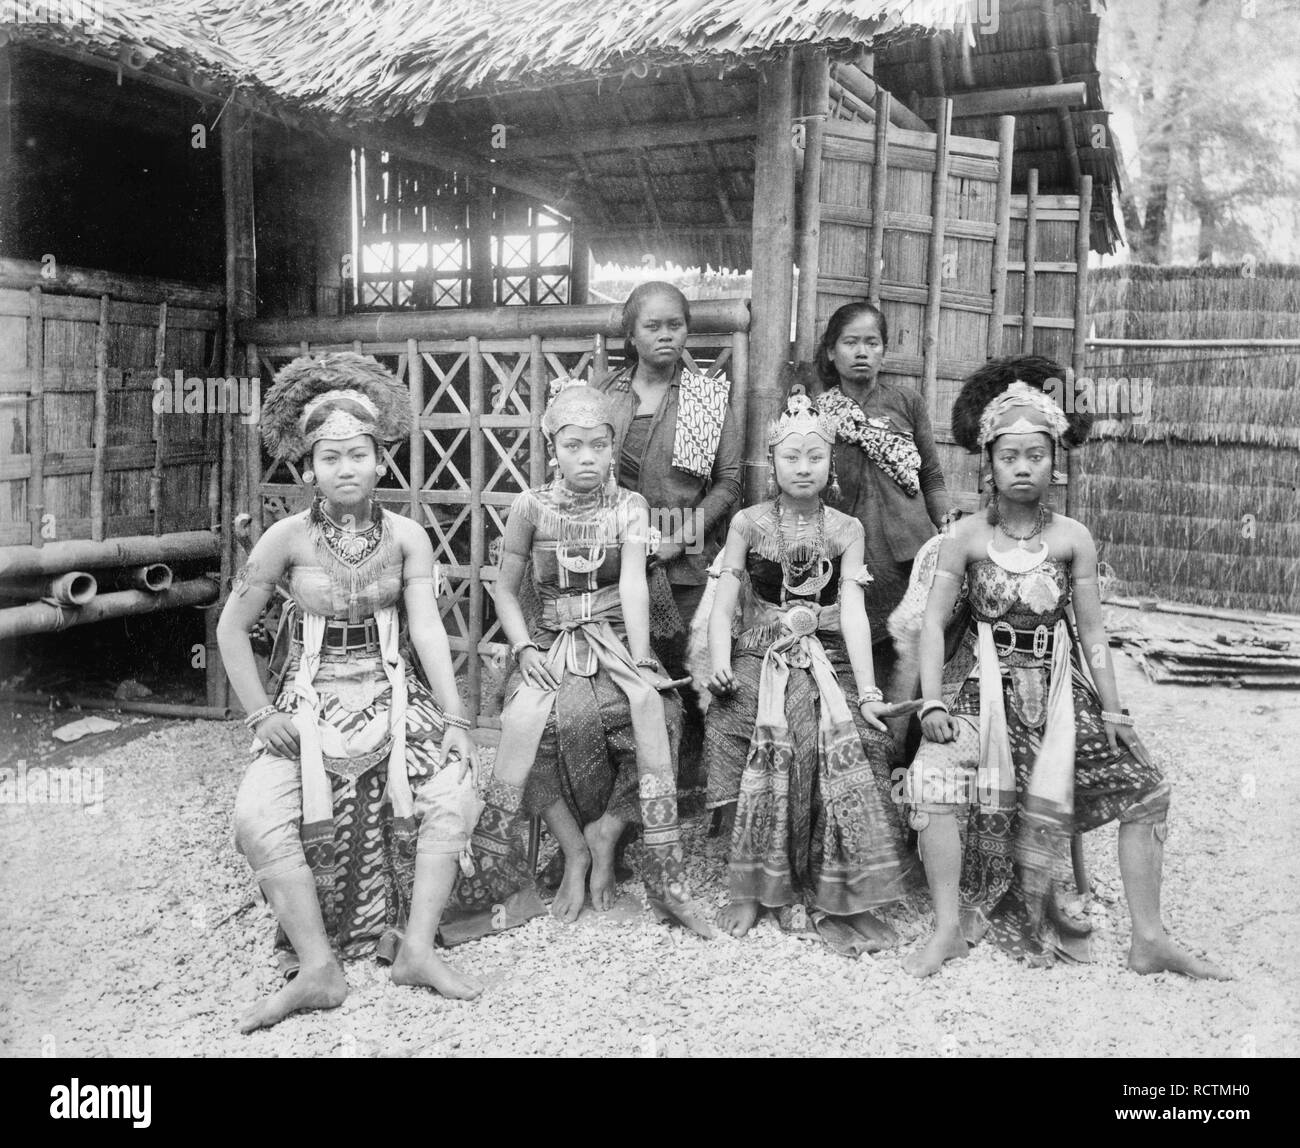 Sechs javanischen Frauen, zwei im nativen Kleid, vier in Kostüm, full-length Portrait, vor der JAVANISCHEN Wohnung sitzt, Paris Exposition, 1889 Stockfoto